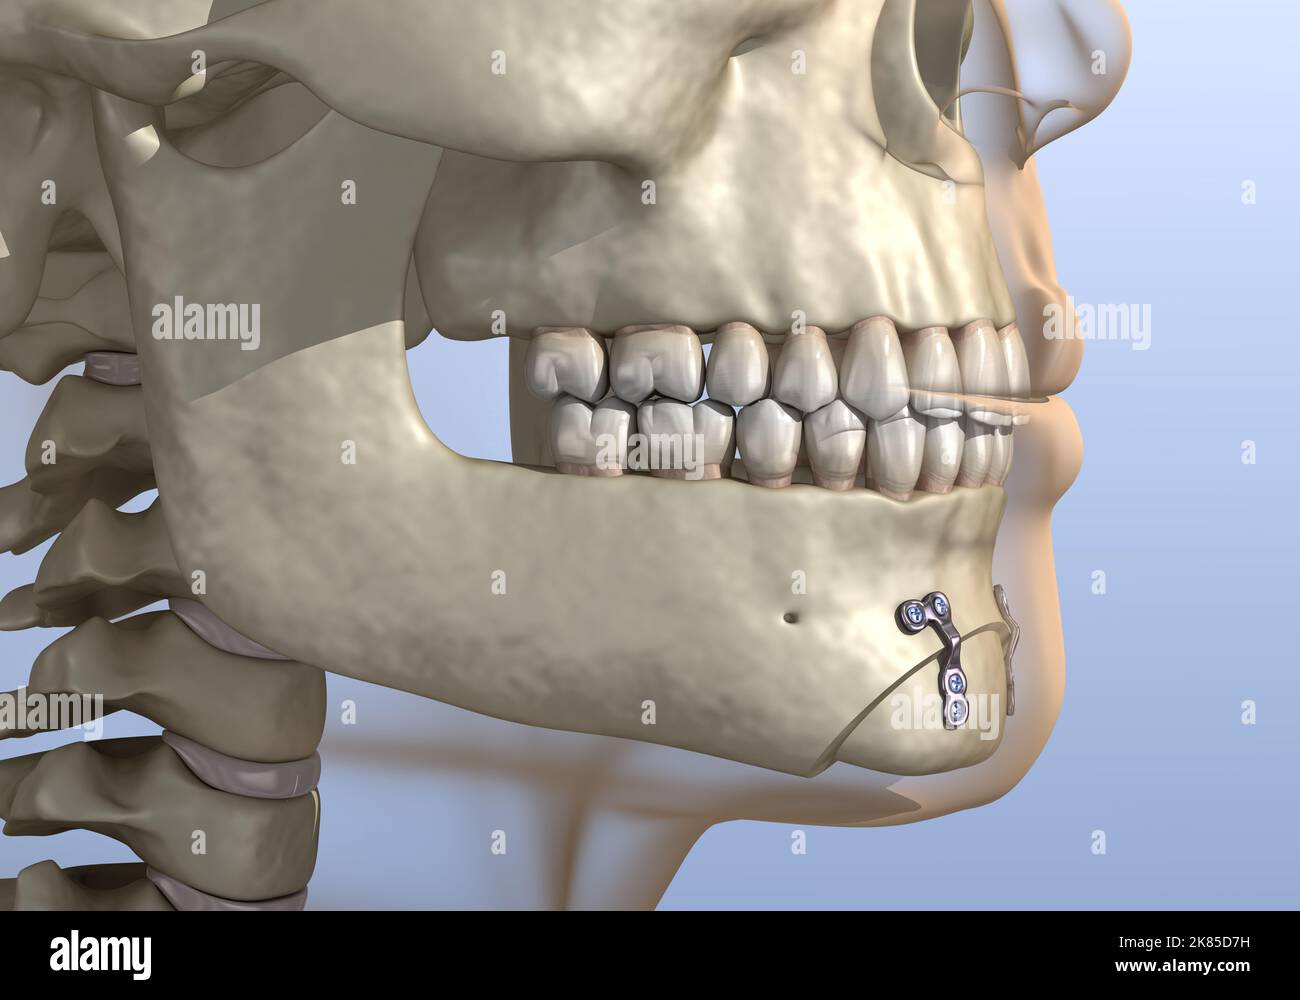 Chirurgia di riduzione del mento (genioplastica ossea). Illustrazione dentale 3D accurata dal punto di vista medico. Foto Stock